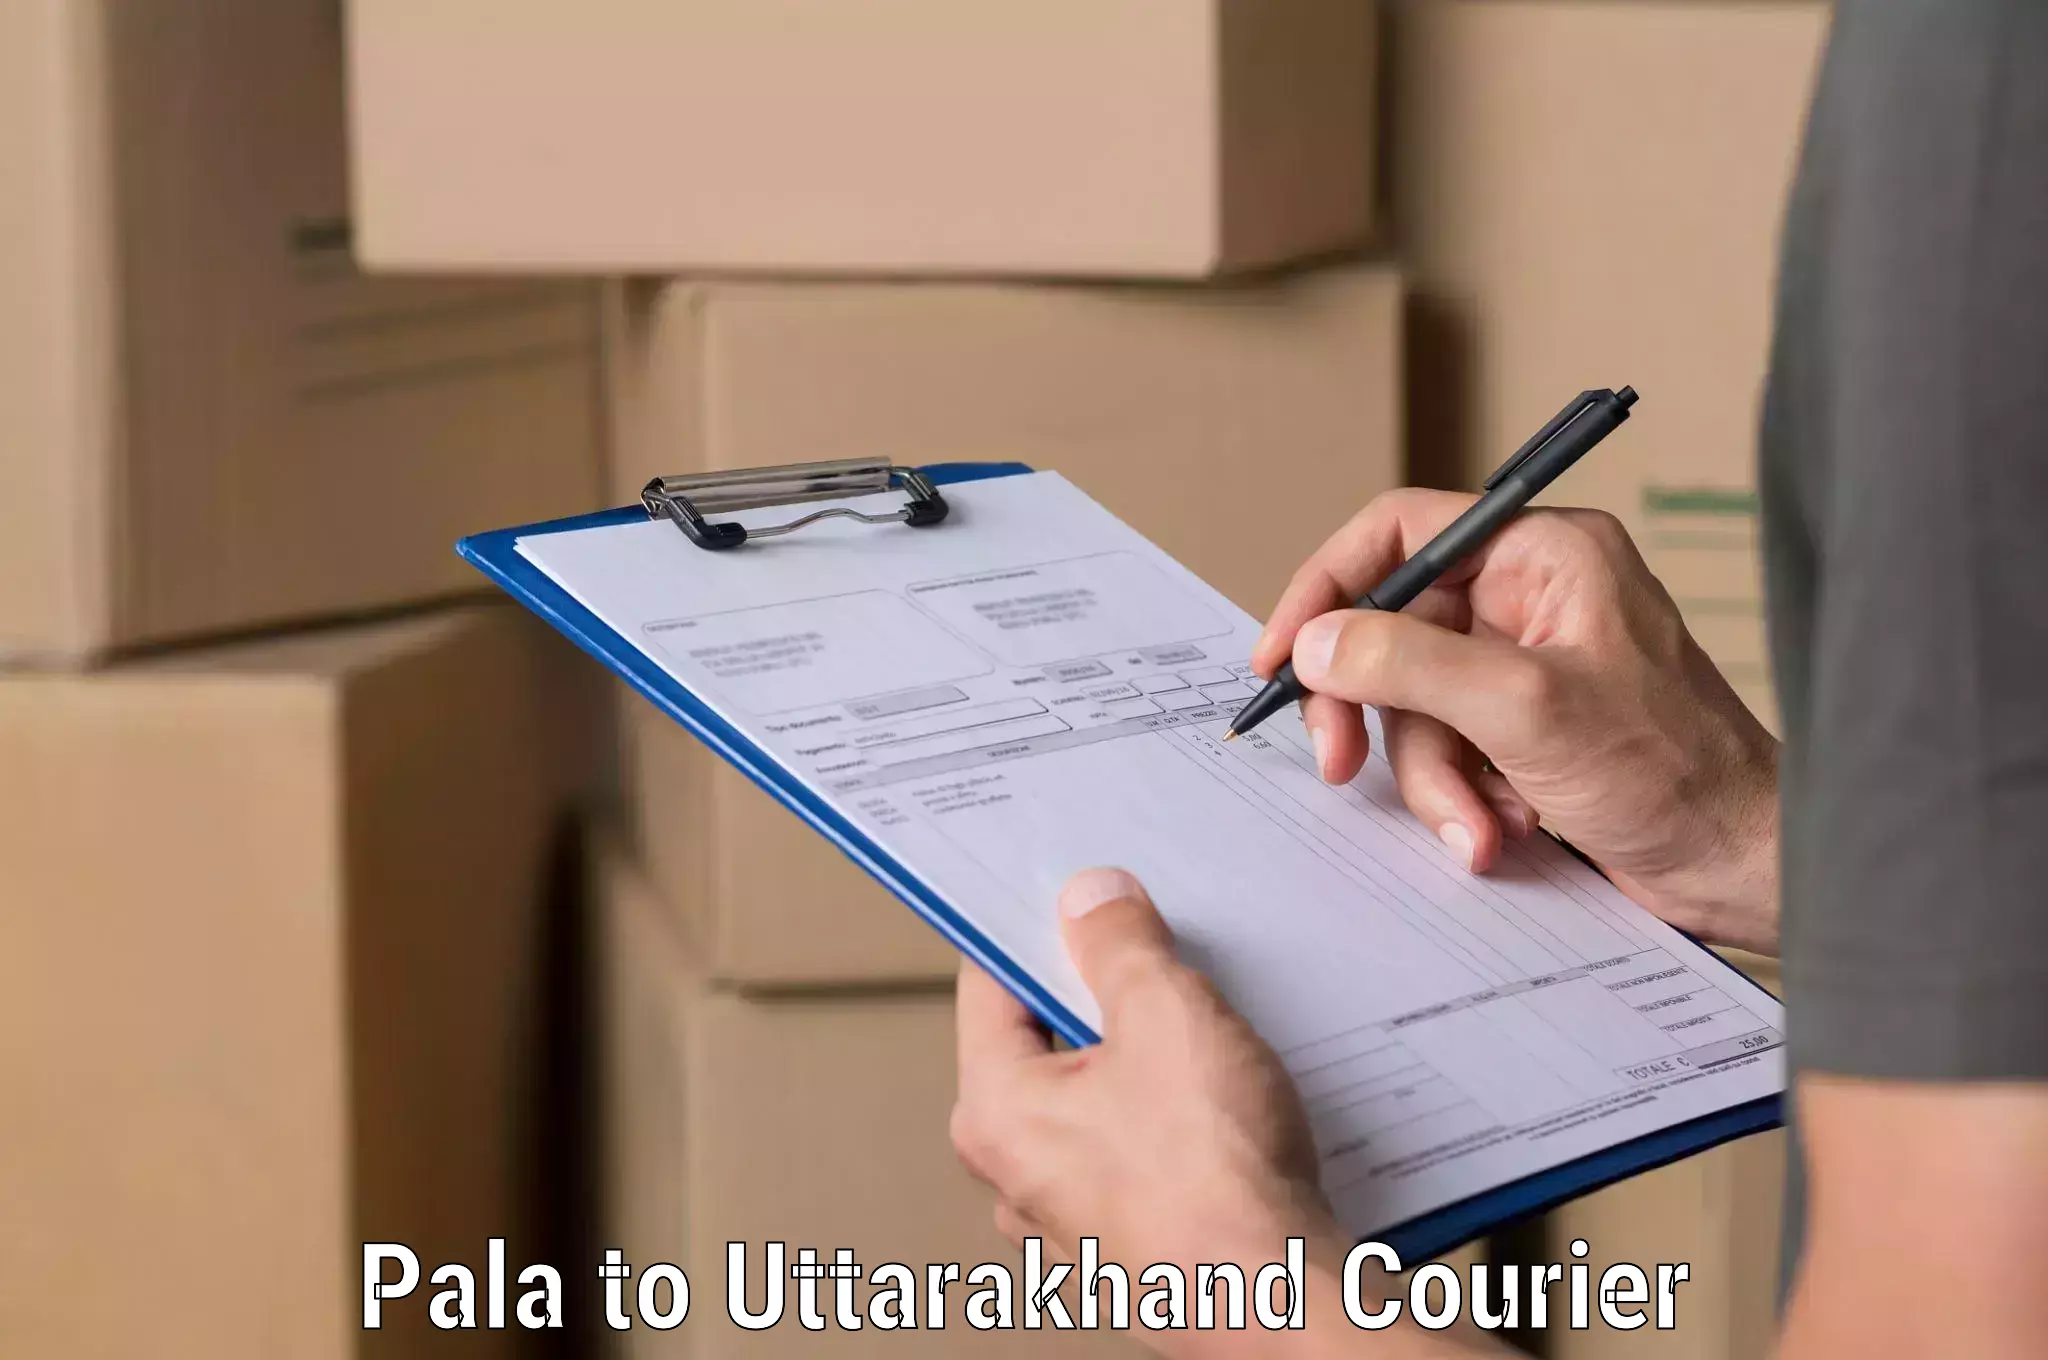 Smart shipping technology Pala to Rudraprayag